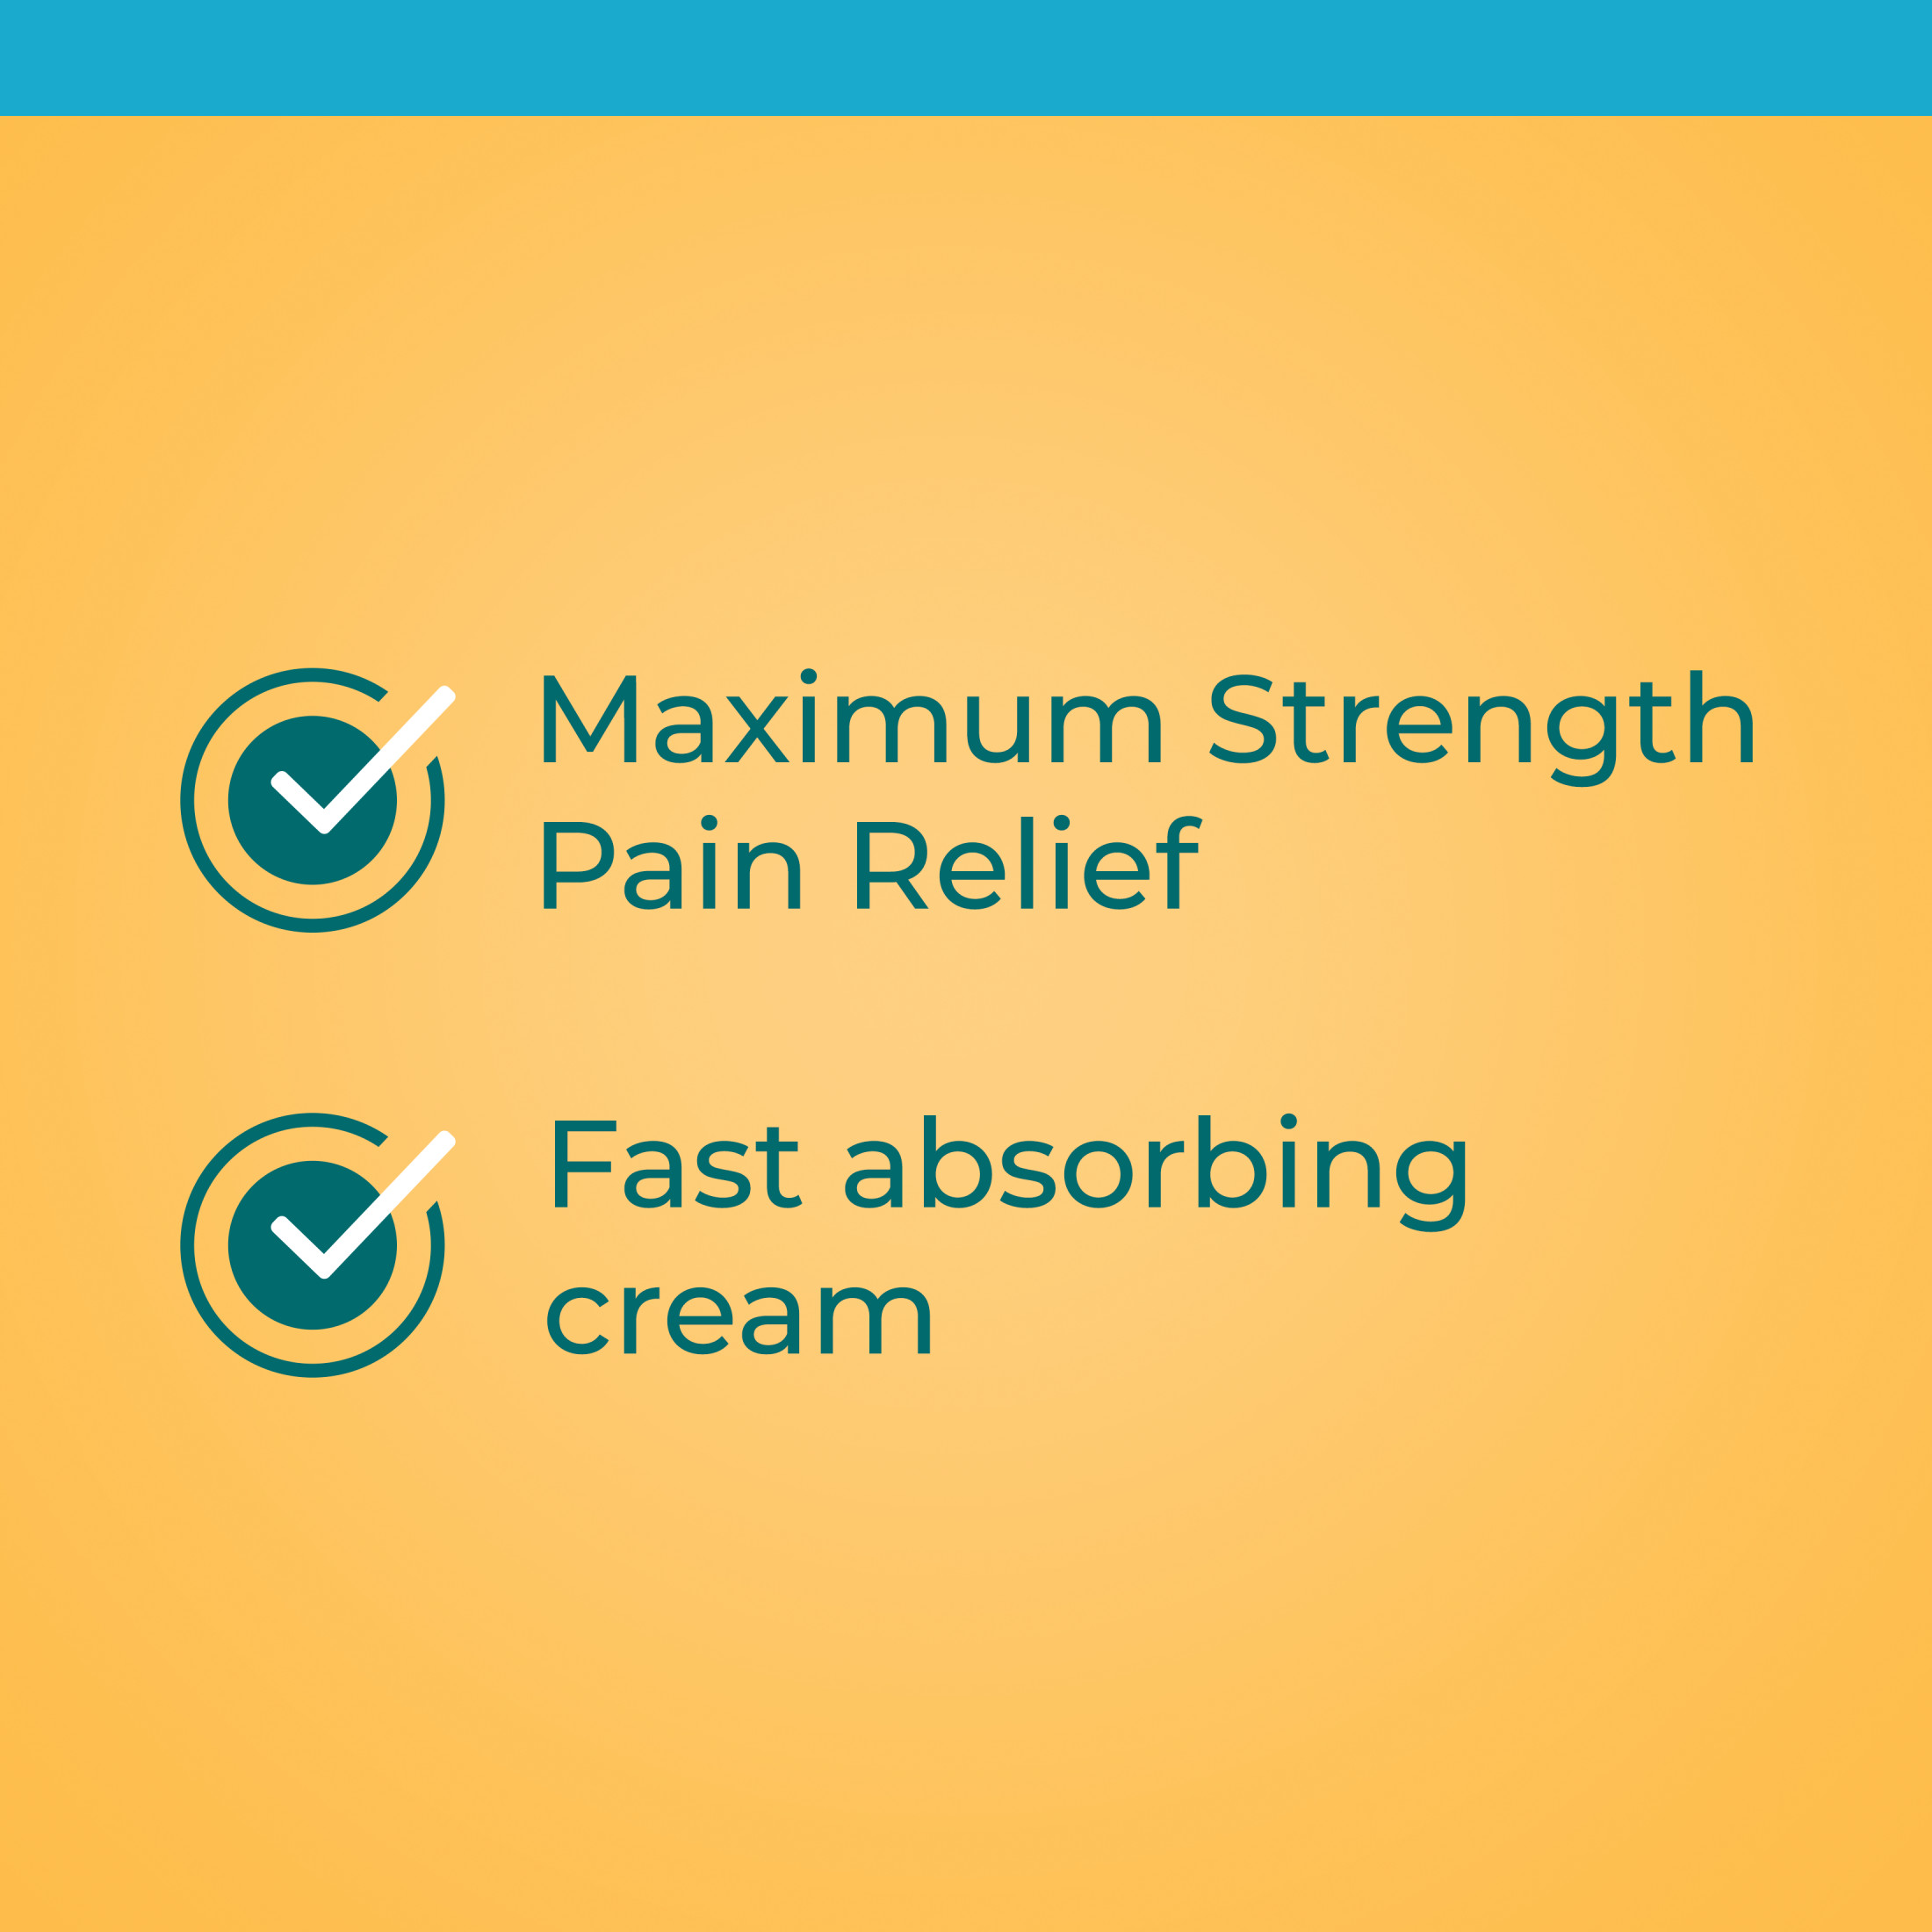 Neosporin + Pain Relief Dual Action First Aid Antibiotic Cream, 1 oz - image 4 of 17